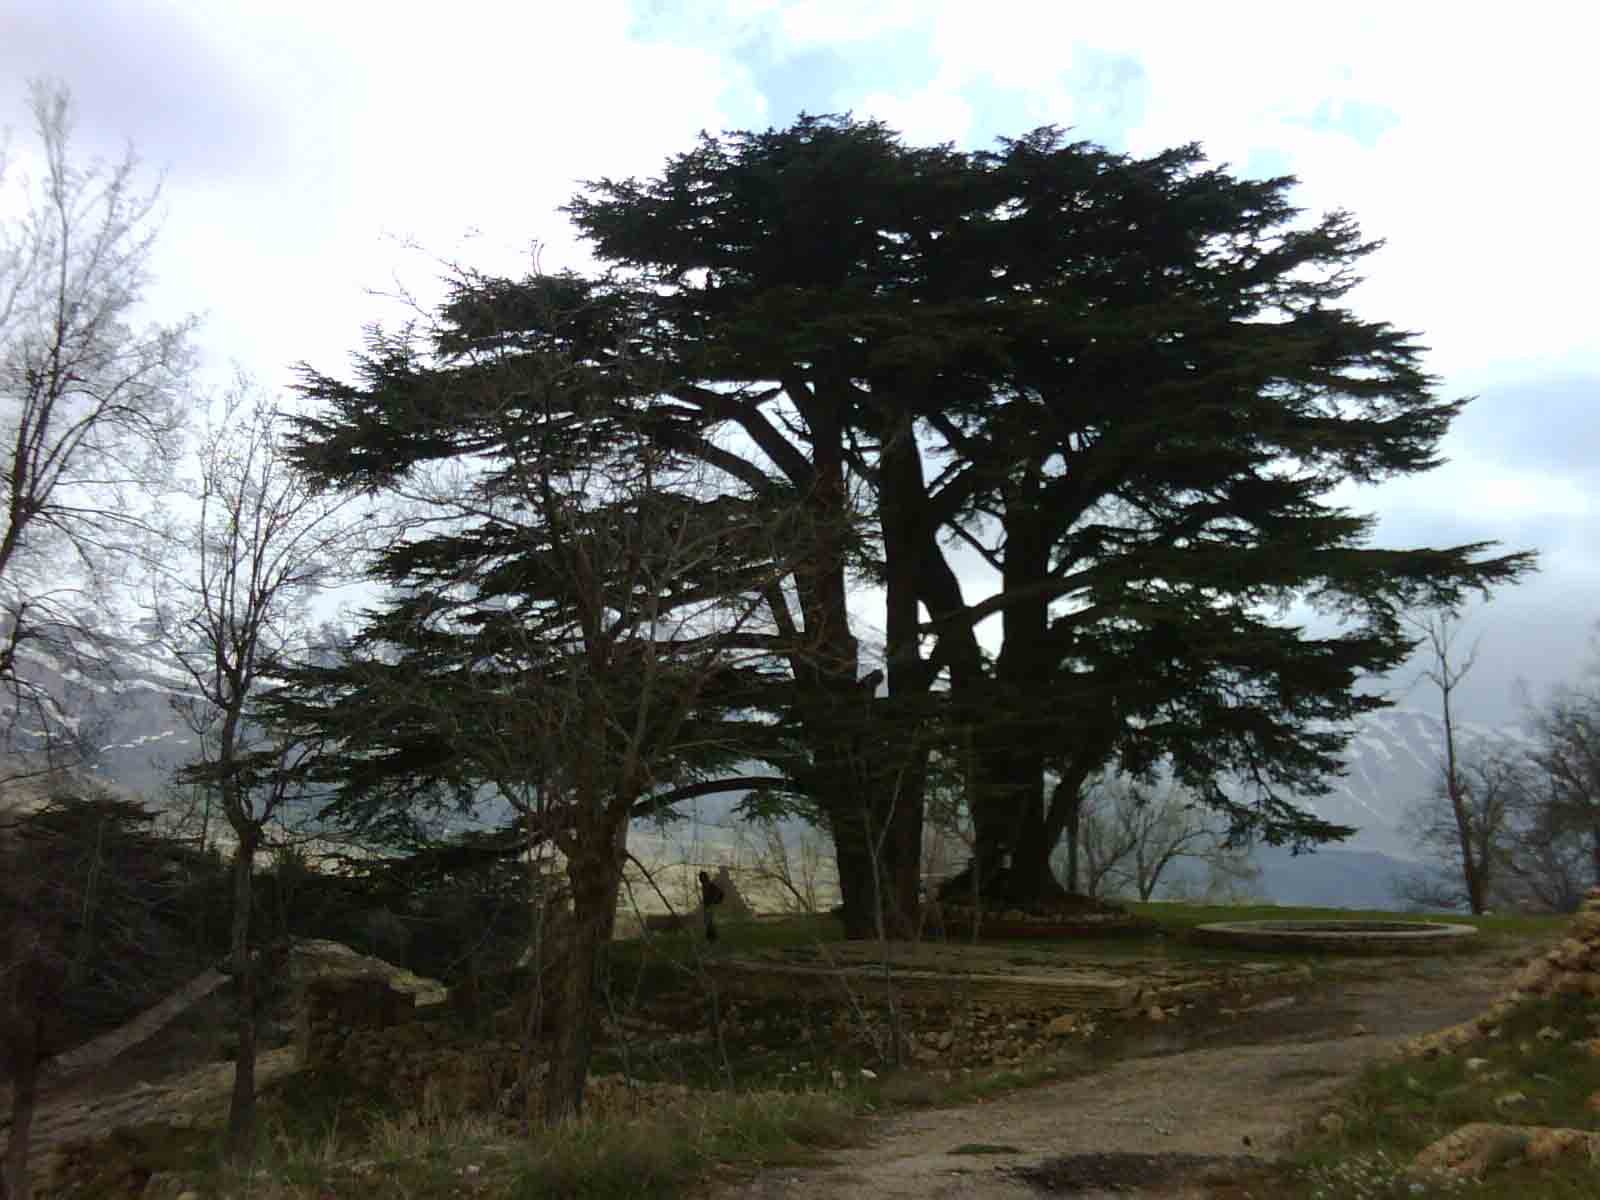 ливанский кедр в крыму фото